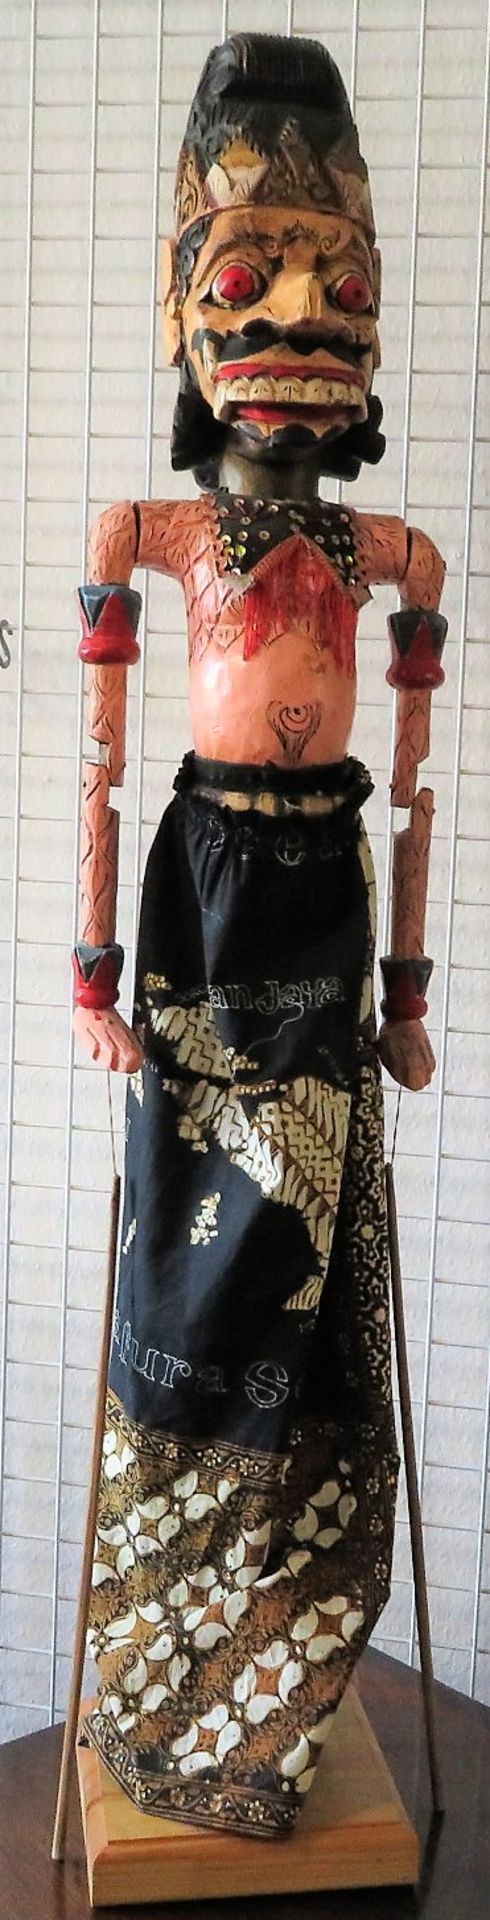 Große Wayang Golek Puppe, Indonesien, Holz geschnitzt und farbig bemalt, Nase best., 114 x 21 x 21